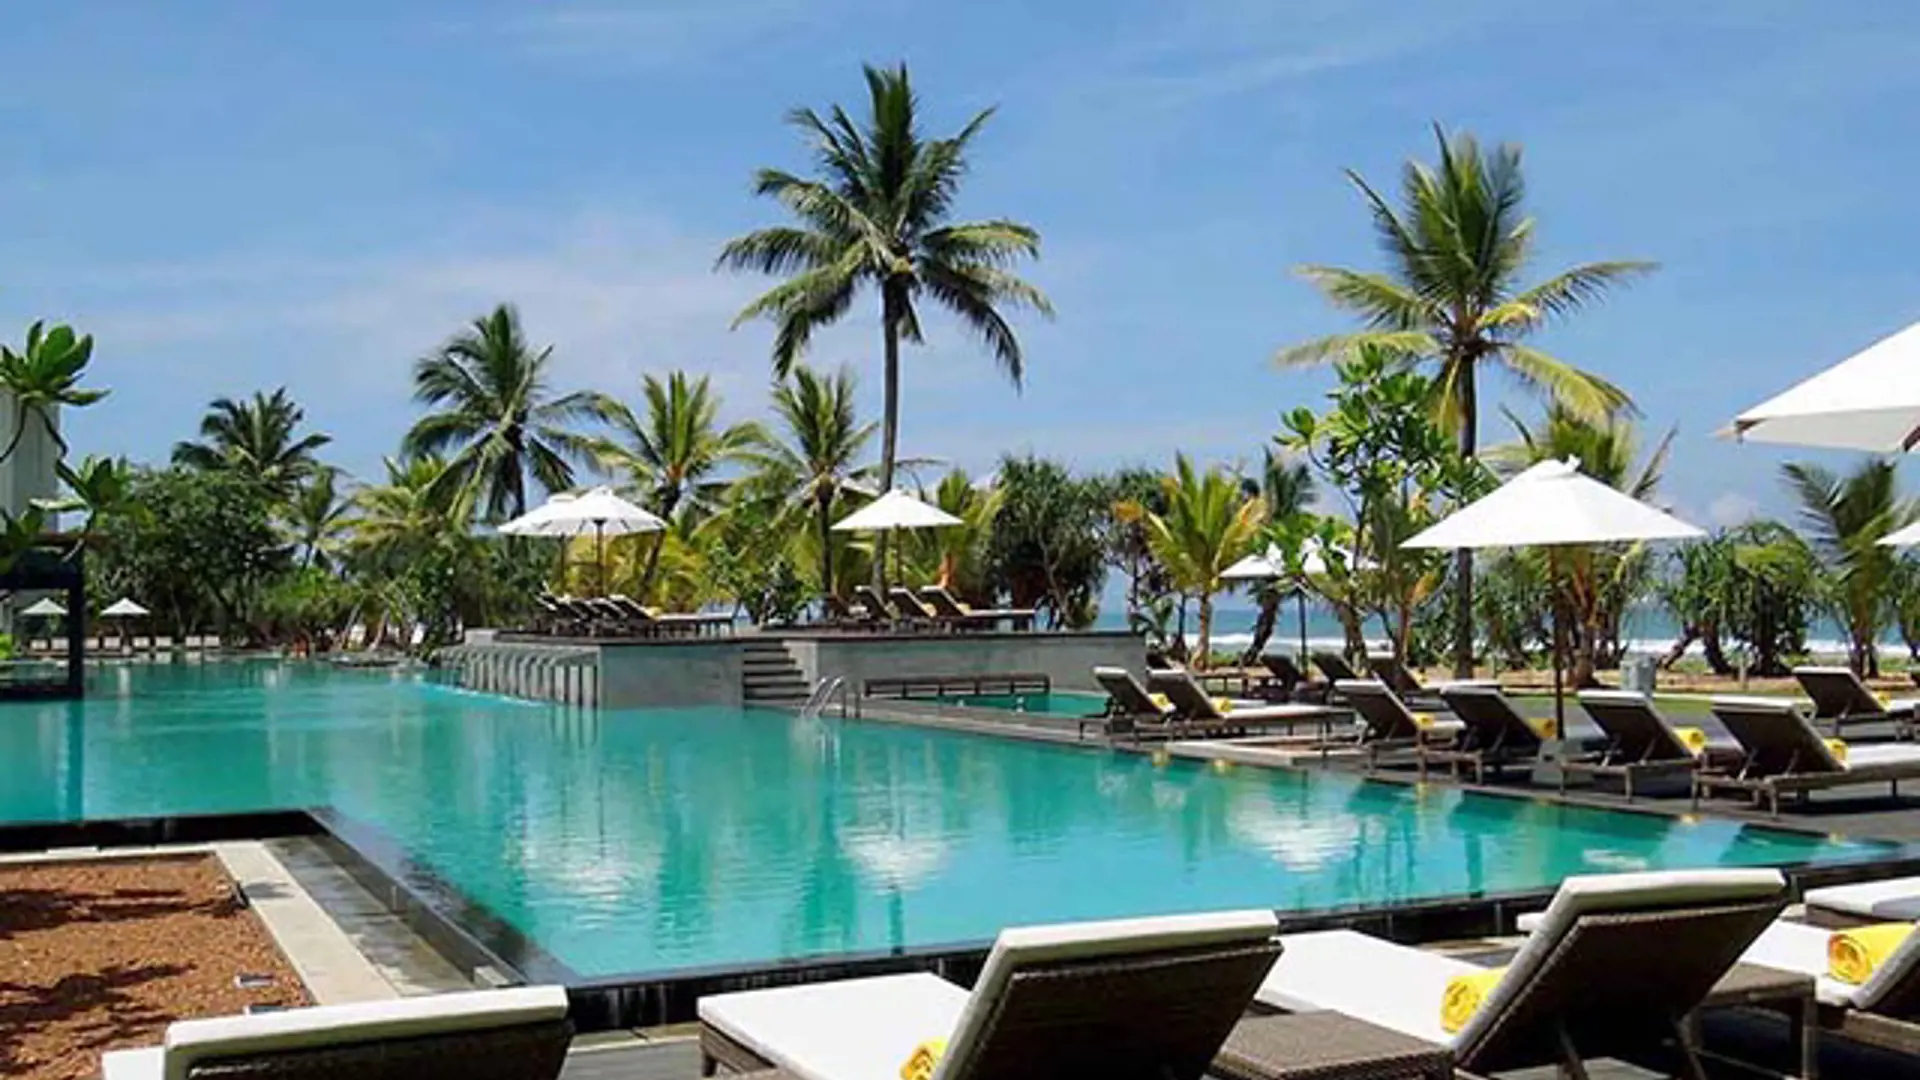 Sri Lanka Swimming Pool 2 640X457